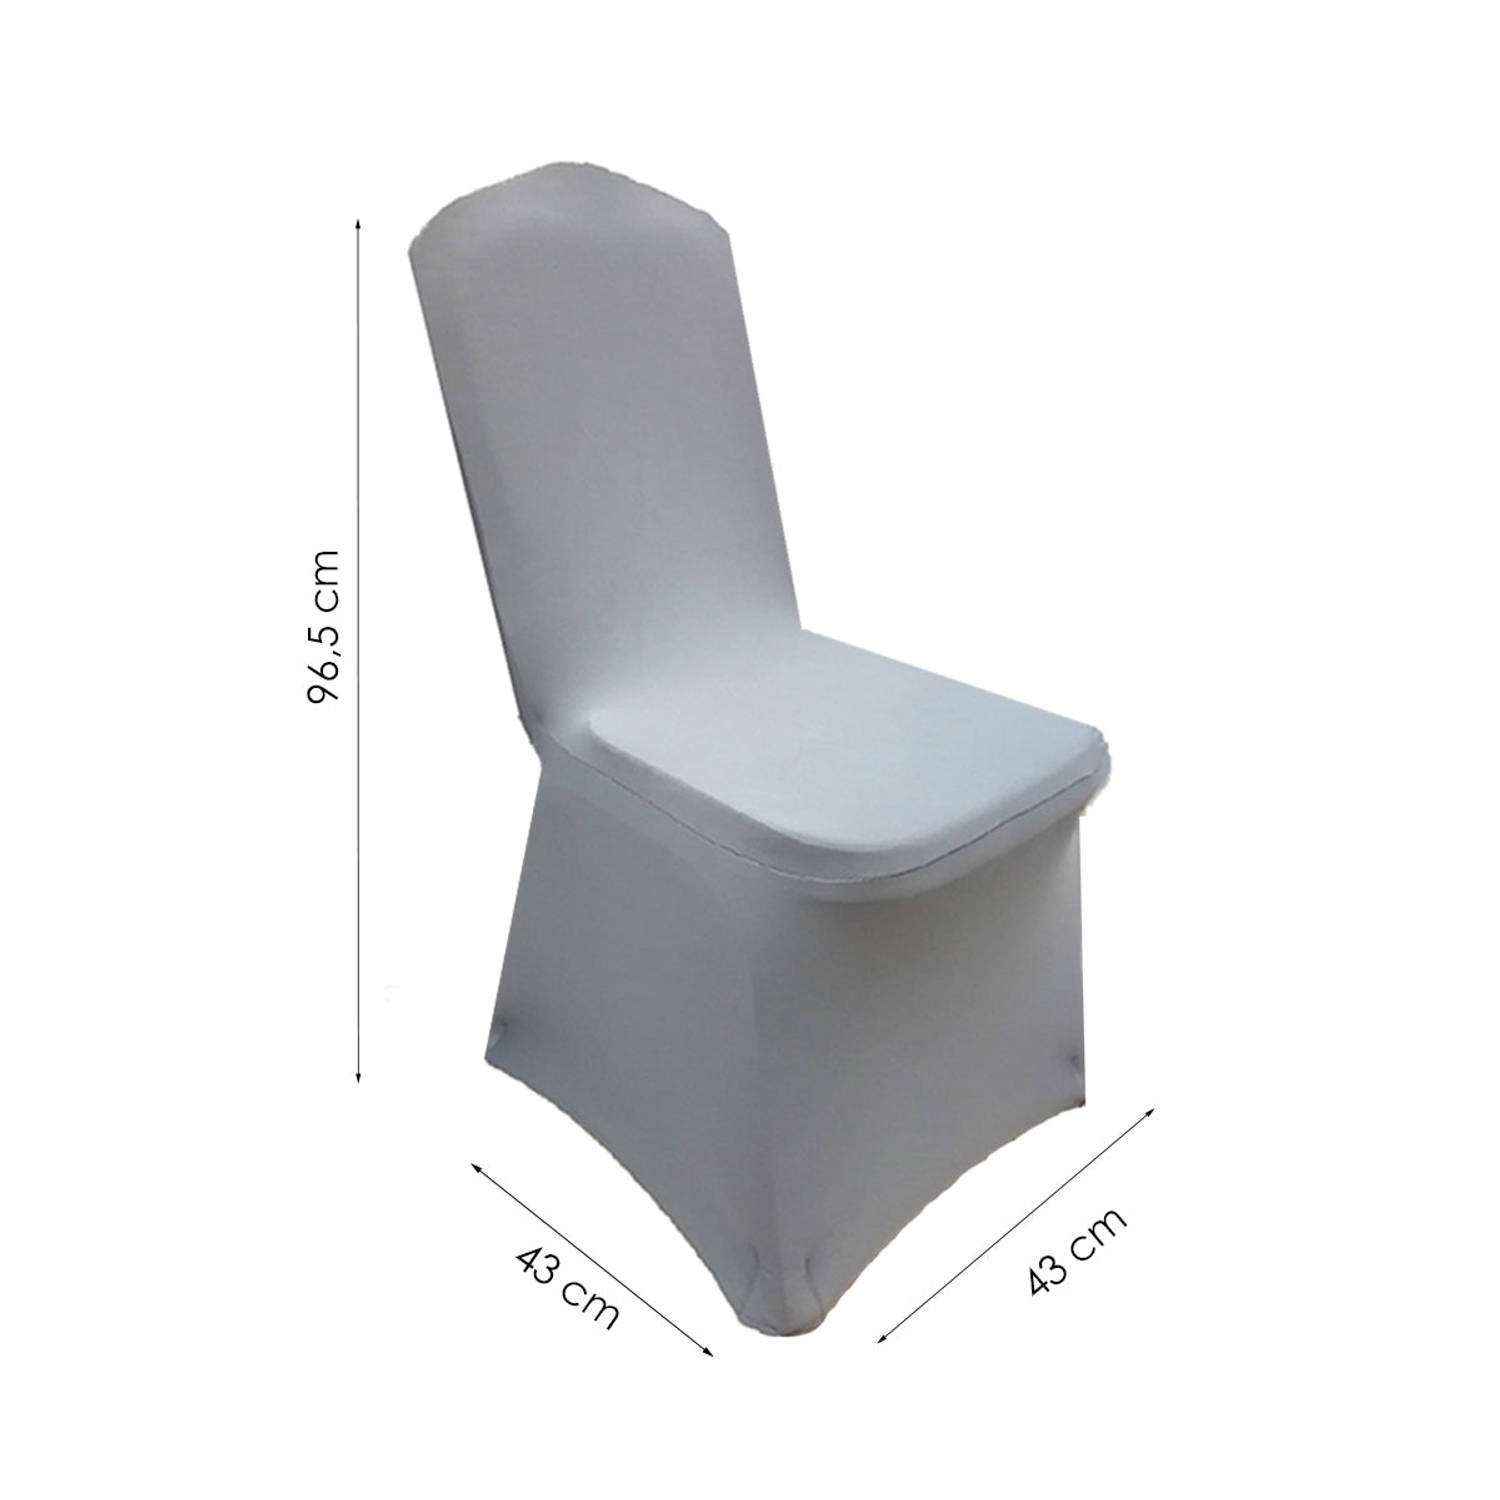 je bent Onderzoek Boer Stoelhoezen - 10 Stuks - Grijs - Bescherm stijlvol je stoelen | Blokker